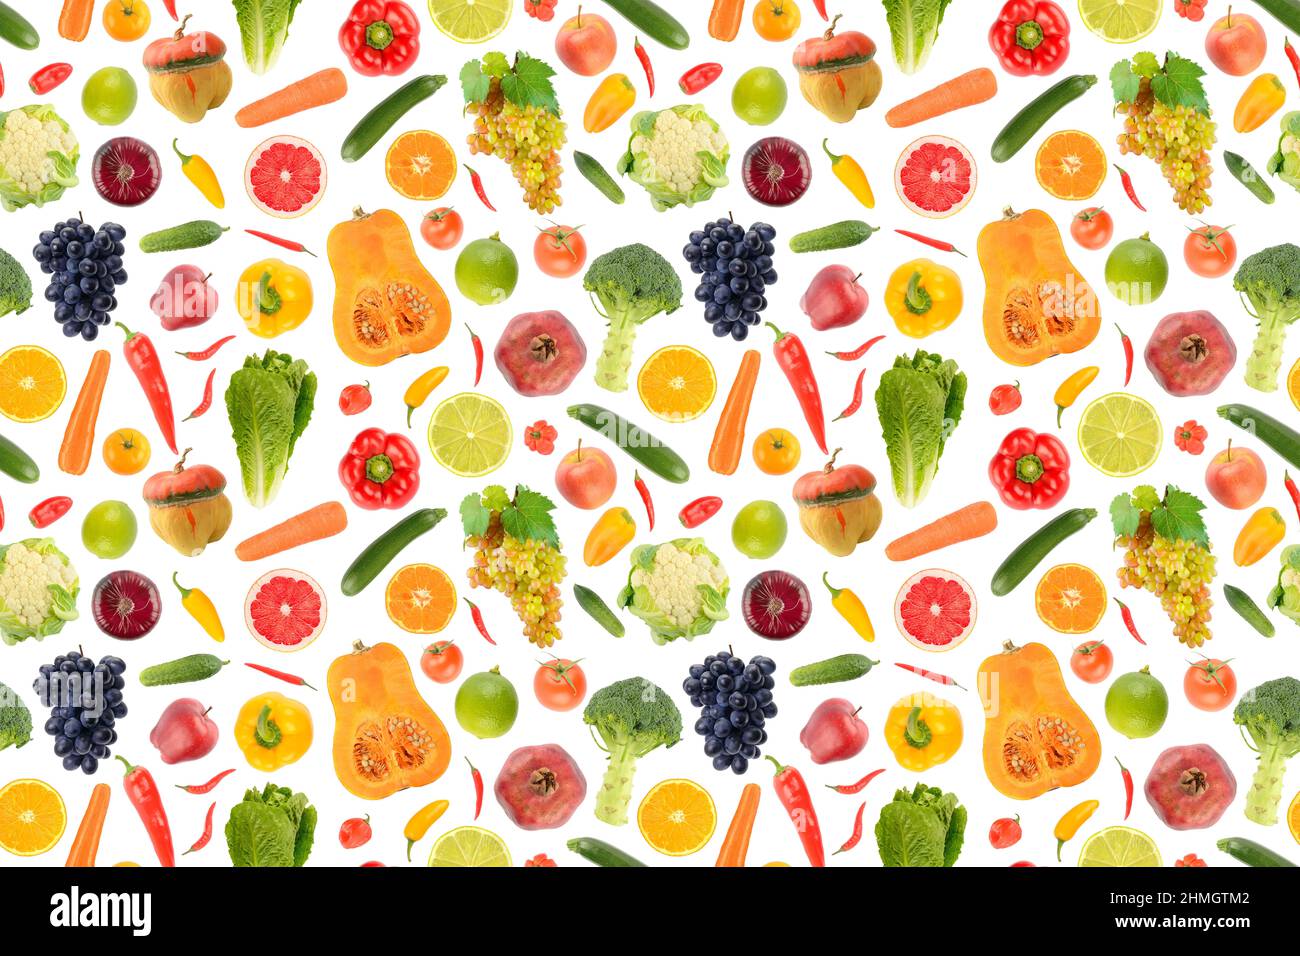 Pattern astratto senza giunture. Grande collezione di verdure fresche e frutta isolate su sfondo bianco. Foto Stock